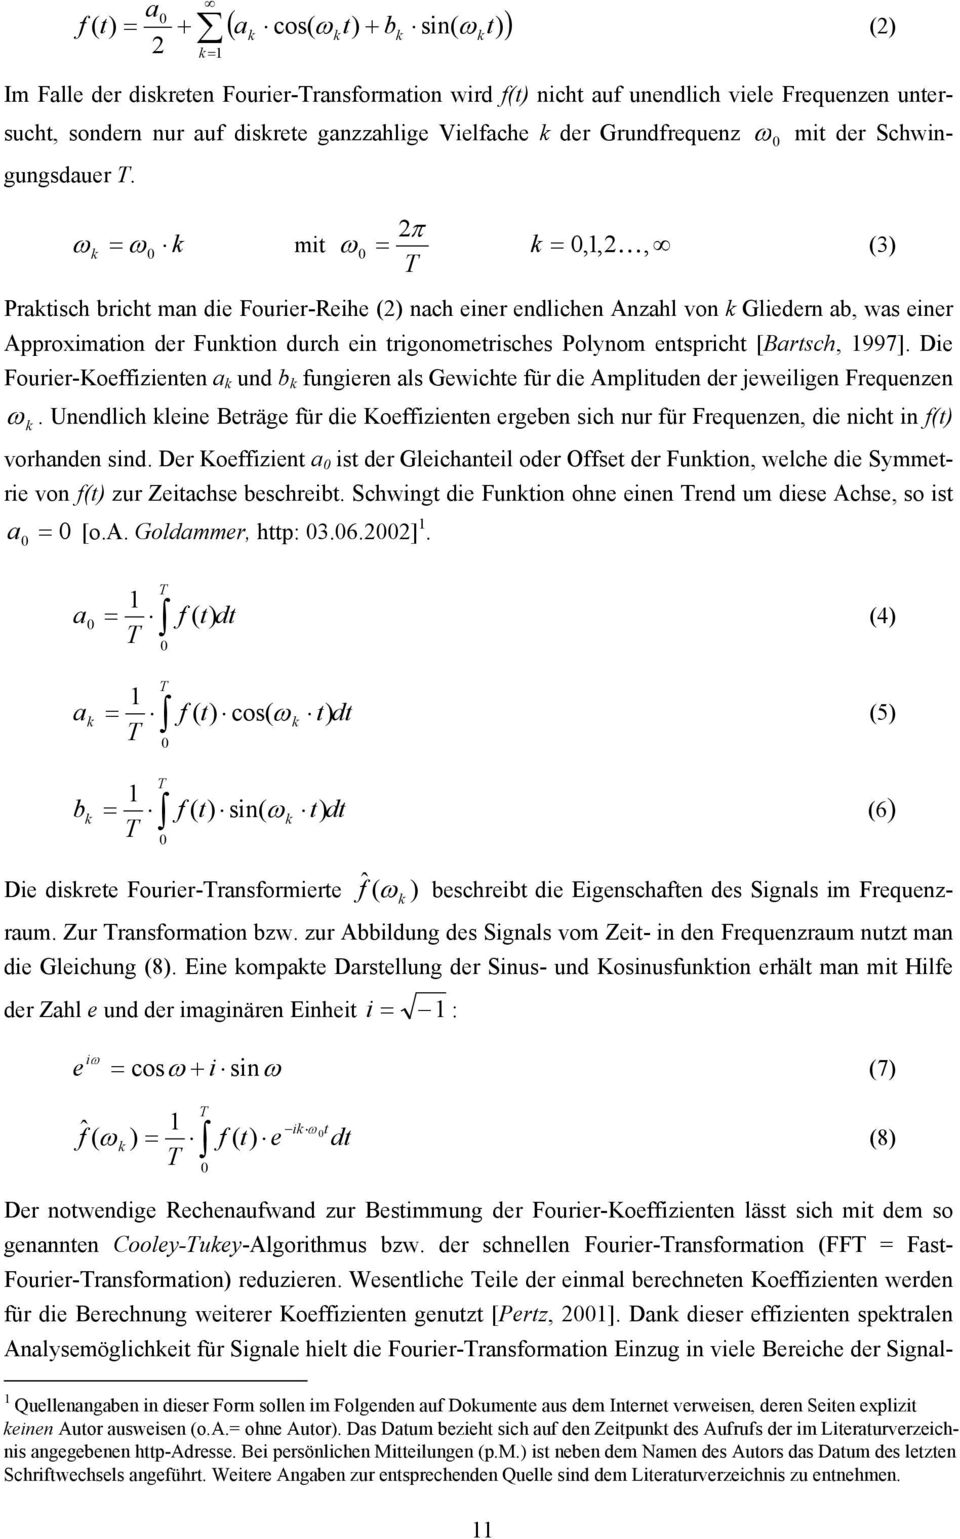 ω k = ω 0 k mit 2π ω 0 = k = 0,1,2 K, (3) T Paktisch bicht man die Fouie-Reihe (2) nach eine endlichen Anzahl von k Glieden ab, was eine Appoximation de Funktion duch ein tigonometisches Polynom